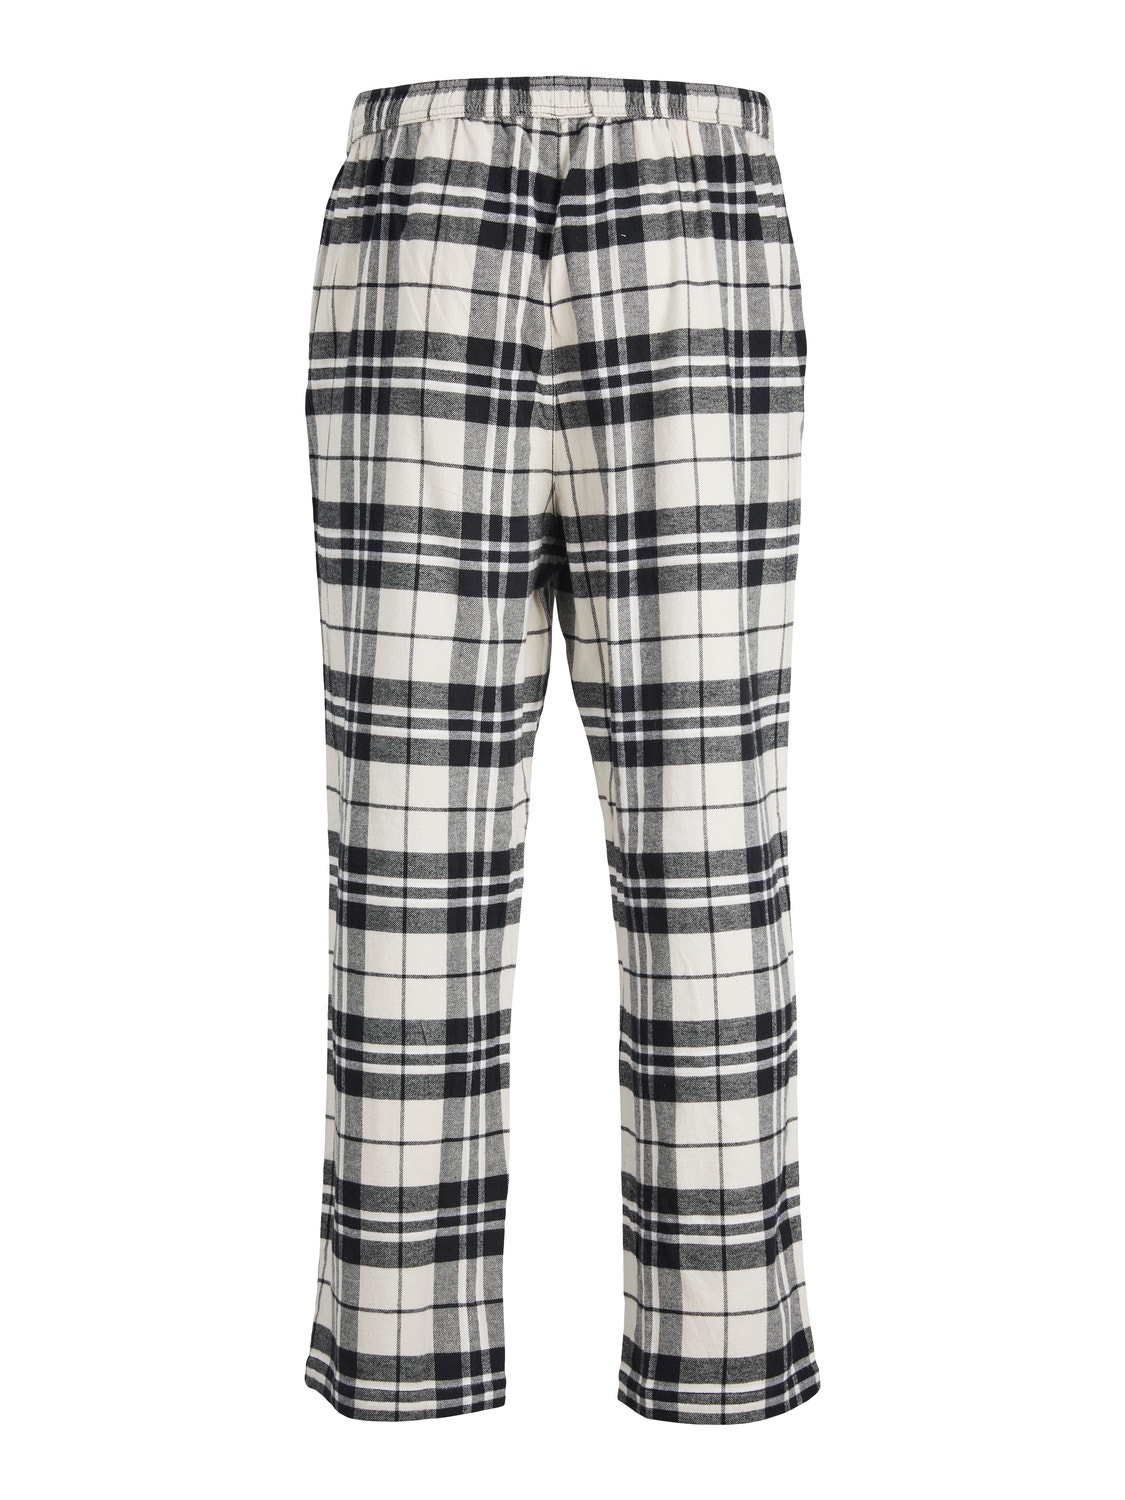 Jack & Jones Pyjama pants -Moonbeam - 12182711